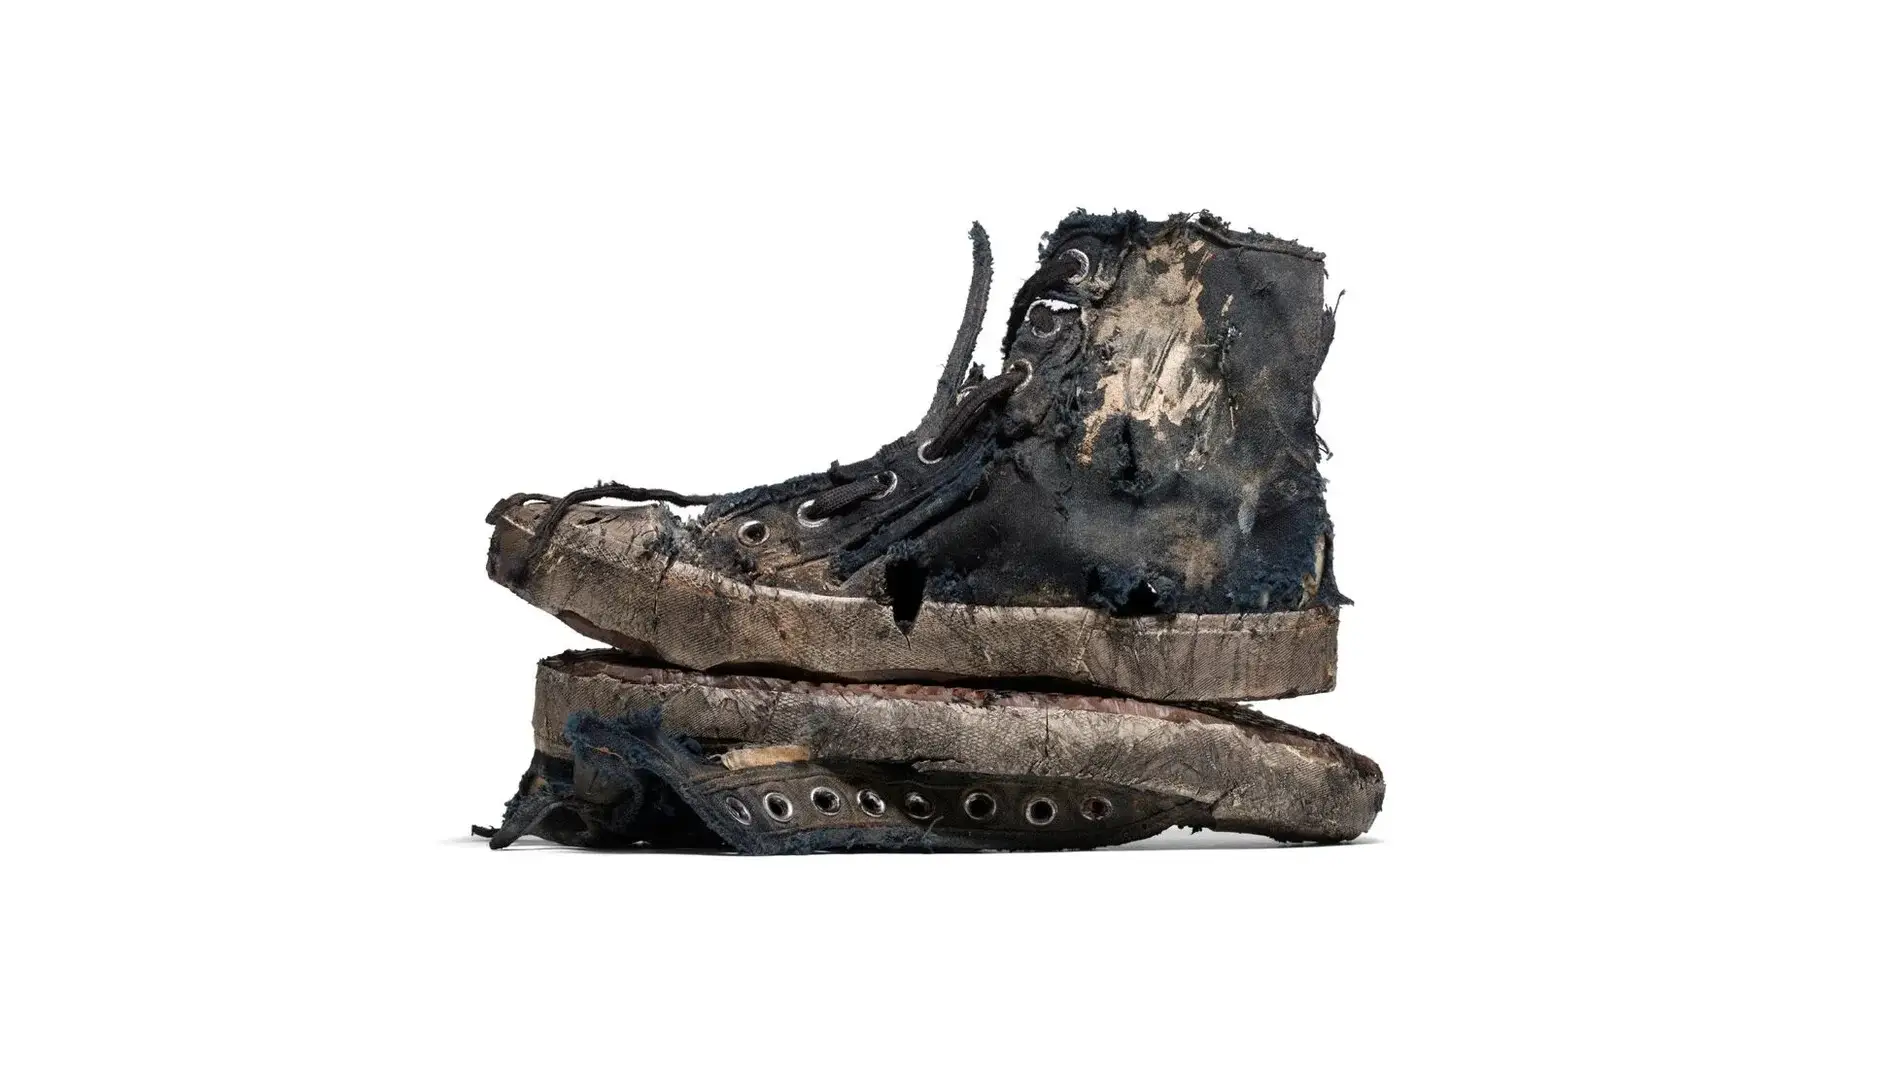 Balenciaga agota su modelo de zapatillas "destrozadas" pese a su precio de 1.450 euros